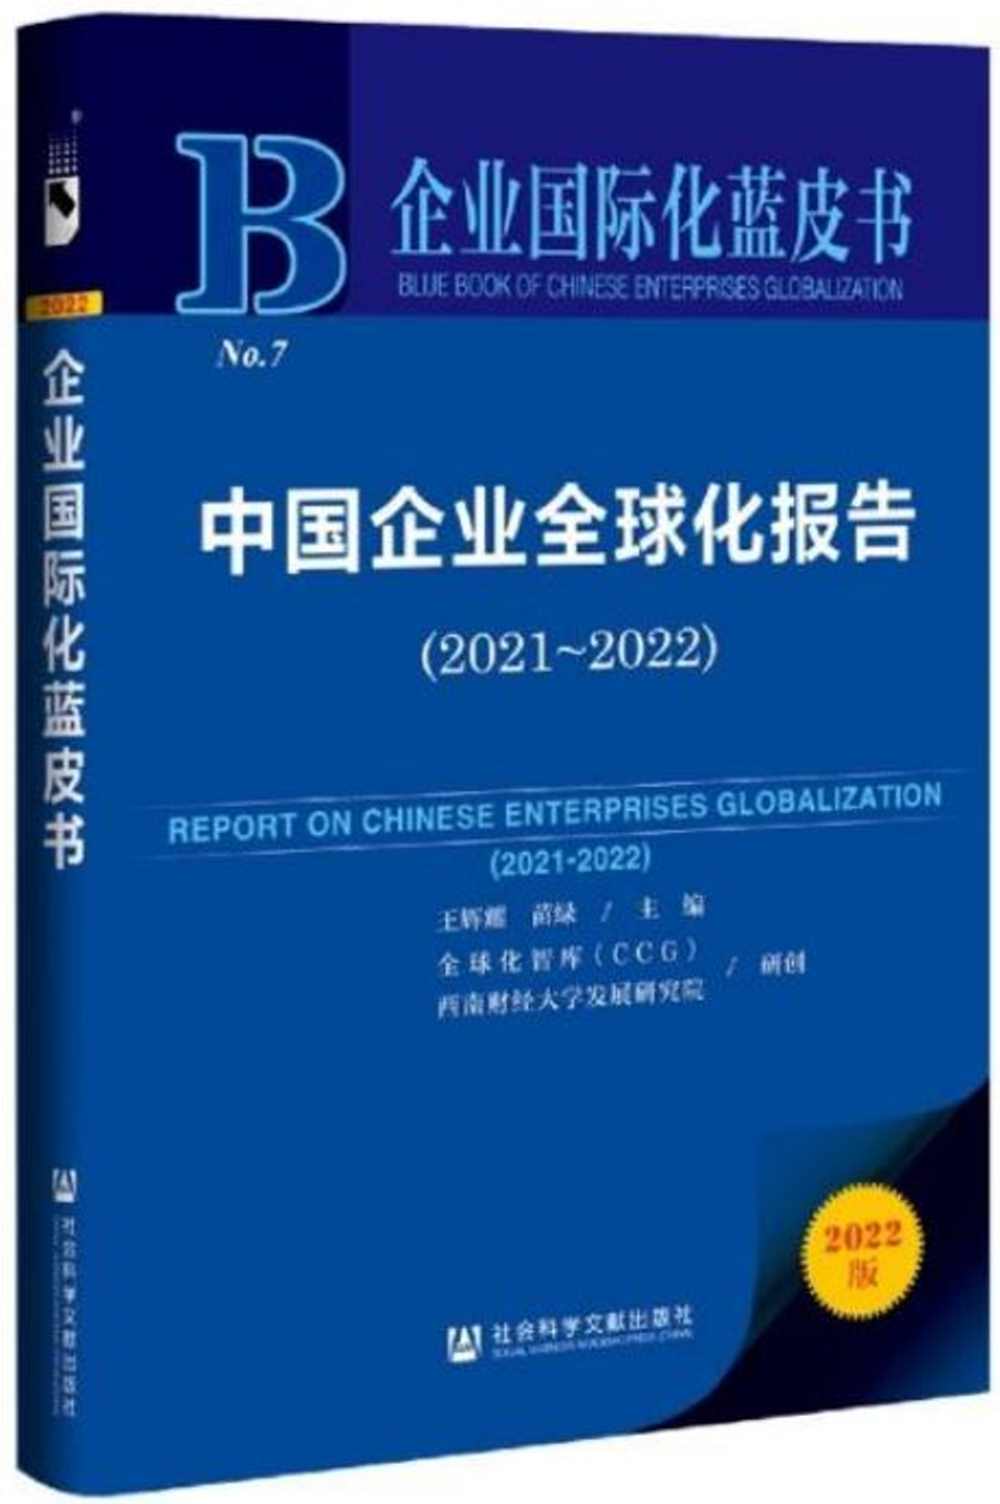 企業國際化藍皮書 No.7：中國企業全球化報告（2021-2022）